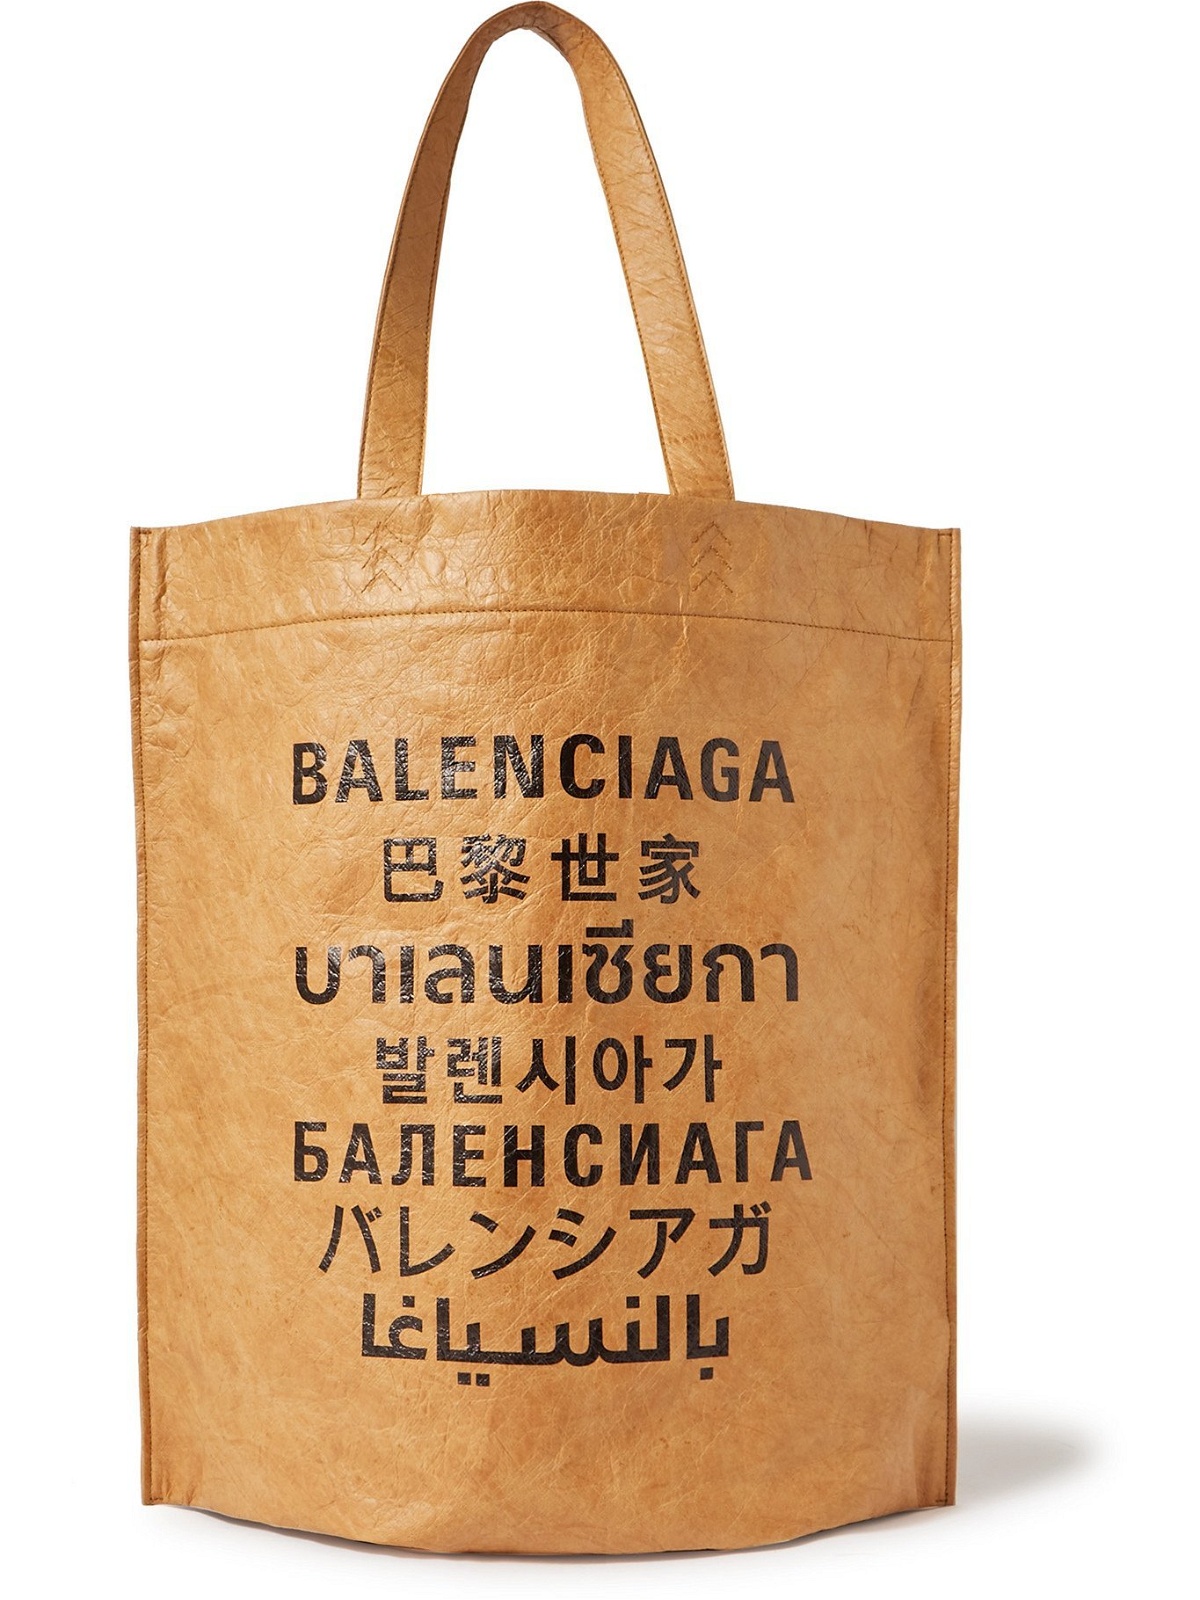 Balenciaga Gift Wrapping Supplies  Mercari